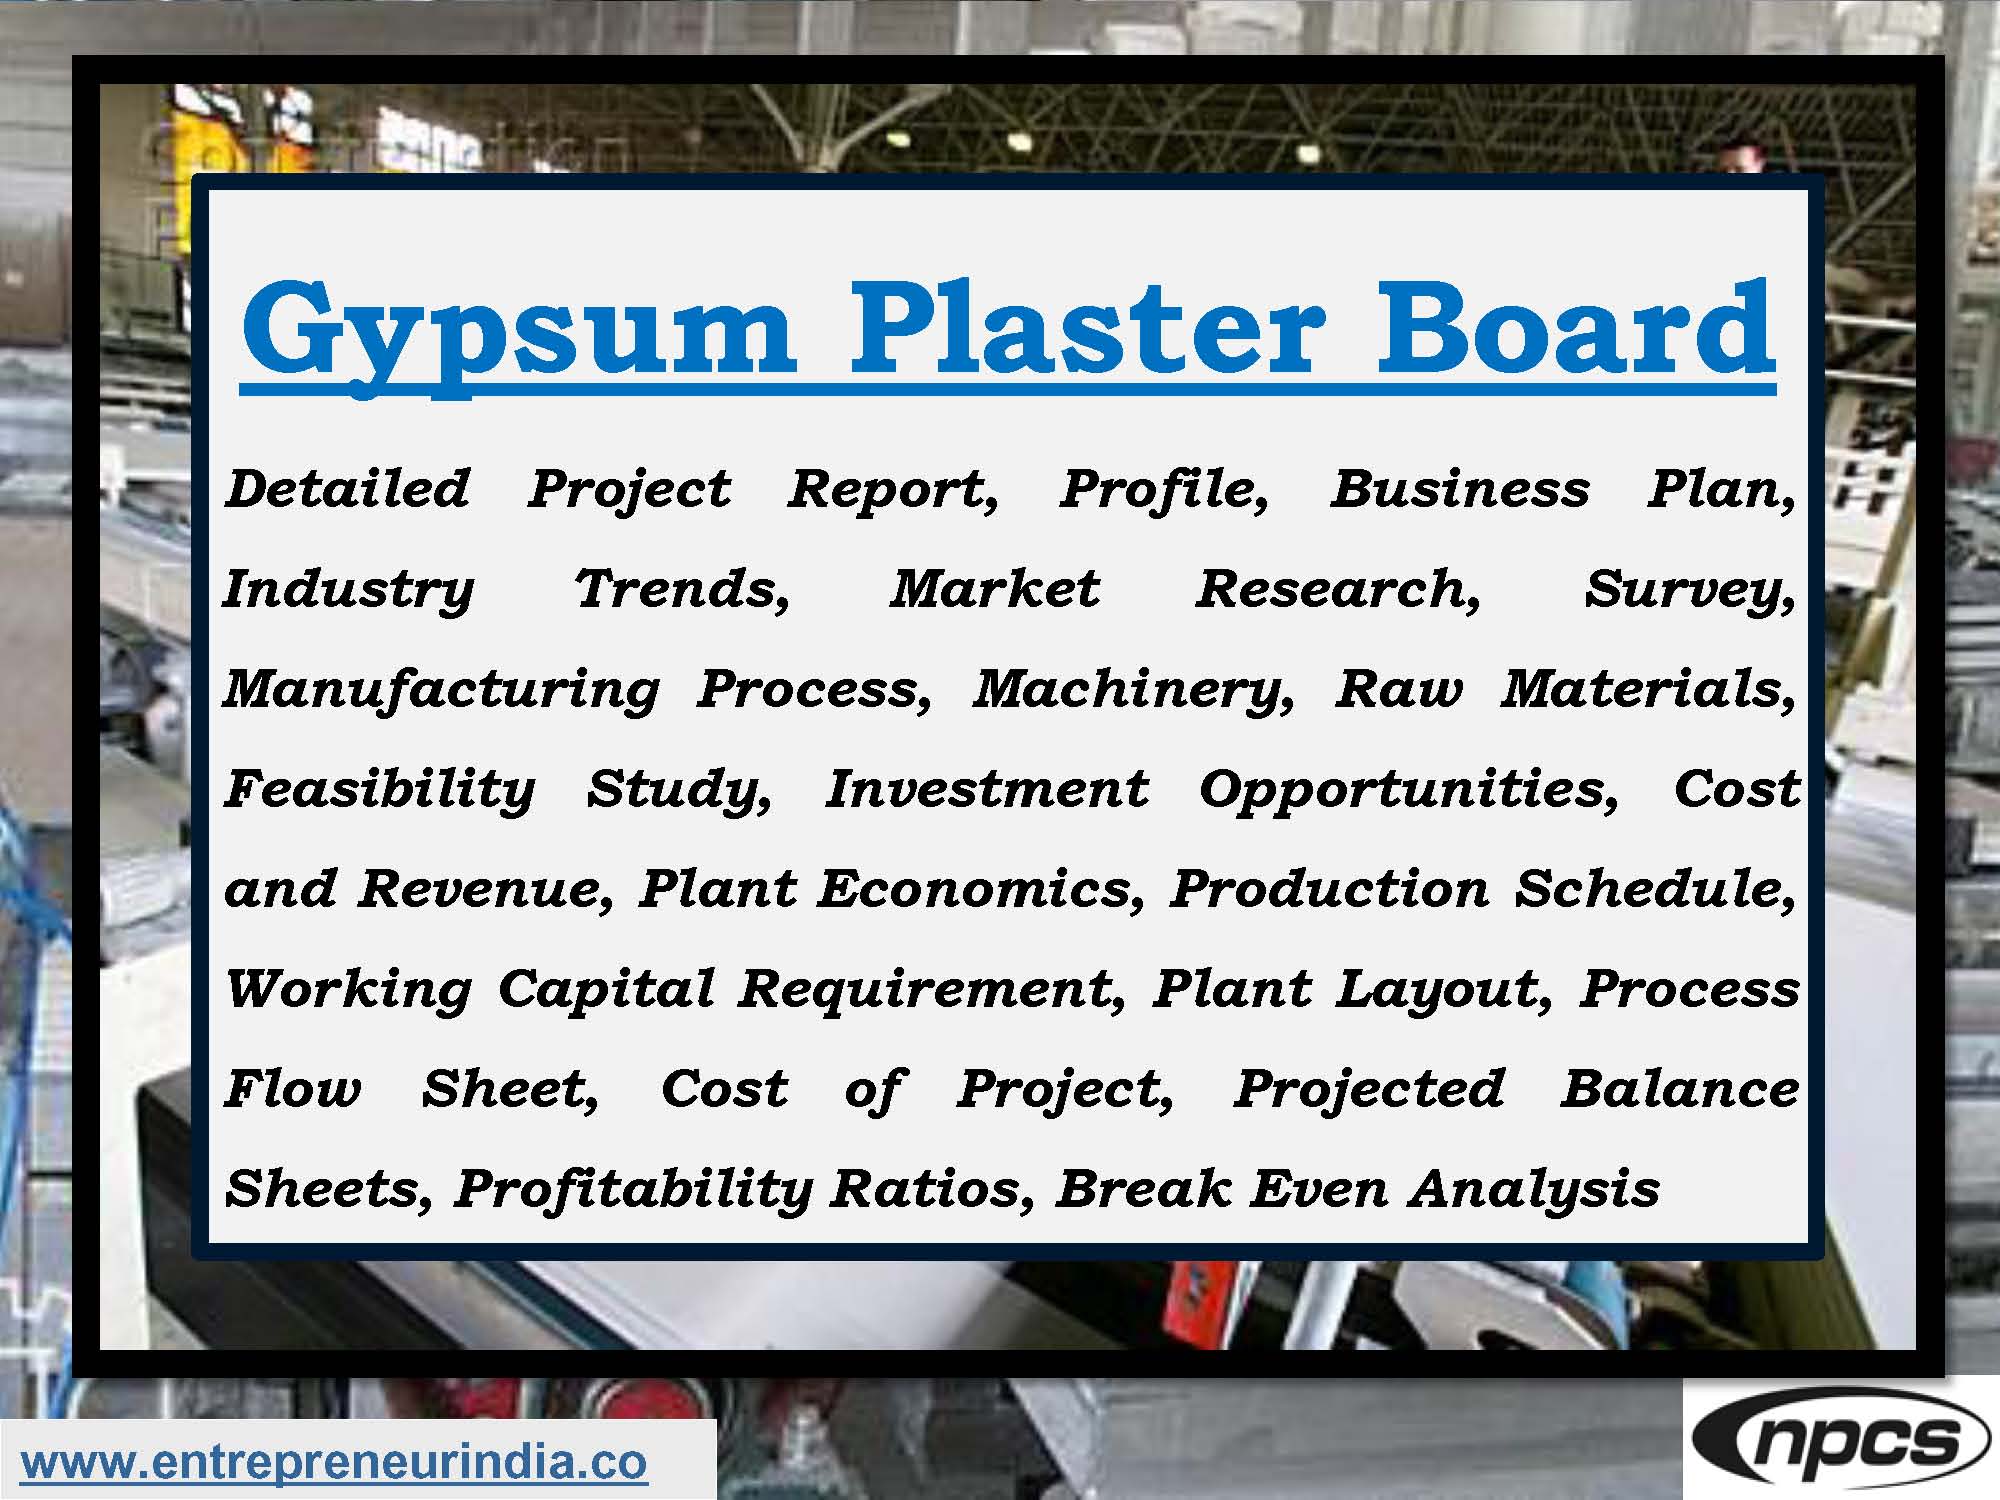 Gypsum Plaster Board